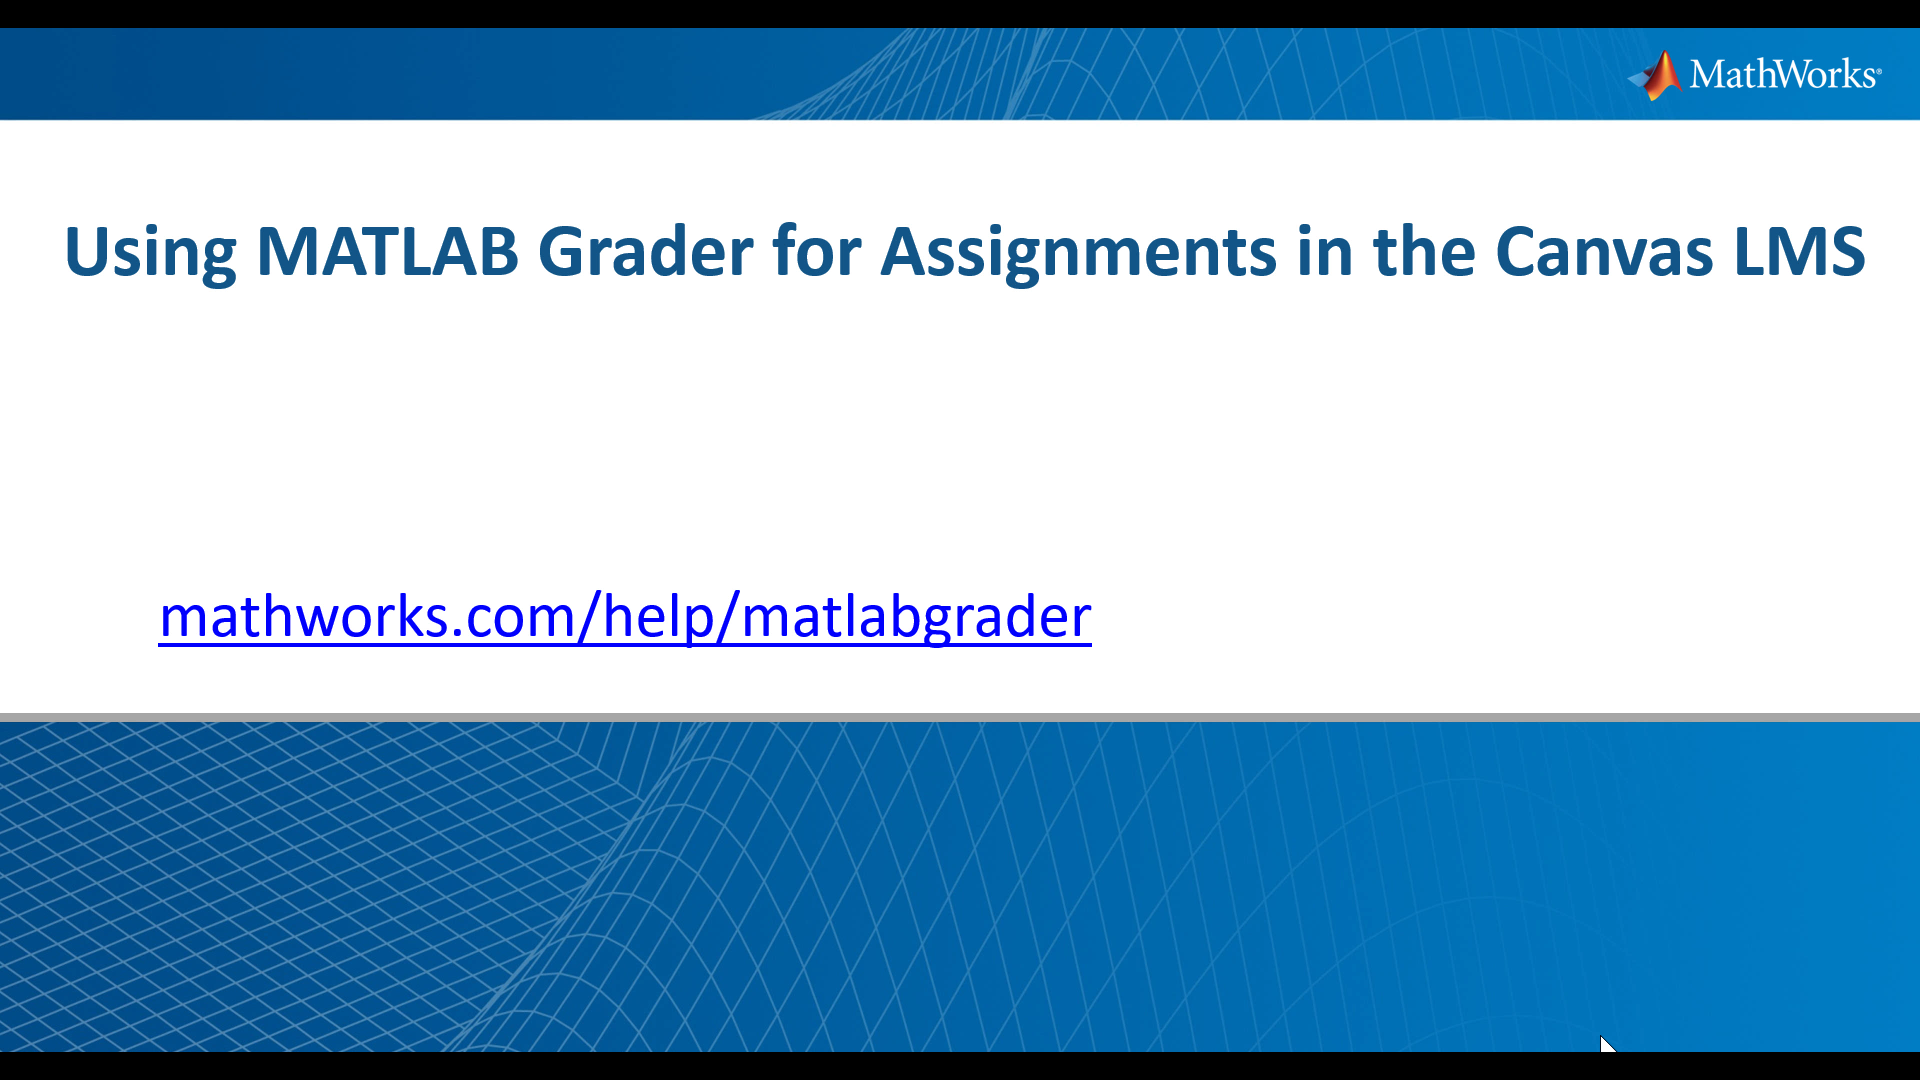 了解教师如何使用Matlab Grader将基于MATLAB的基于MATLAB的基于MATLAB的分配添加到他们的Canvas学习管理系统。